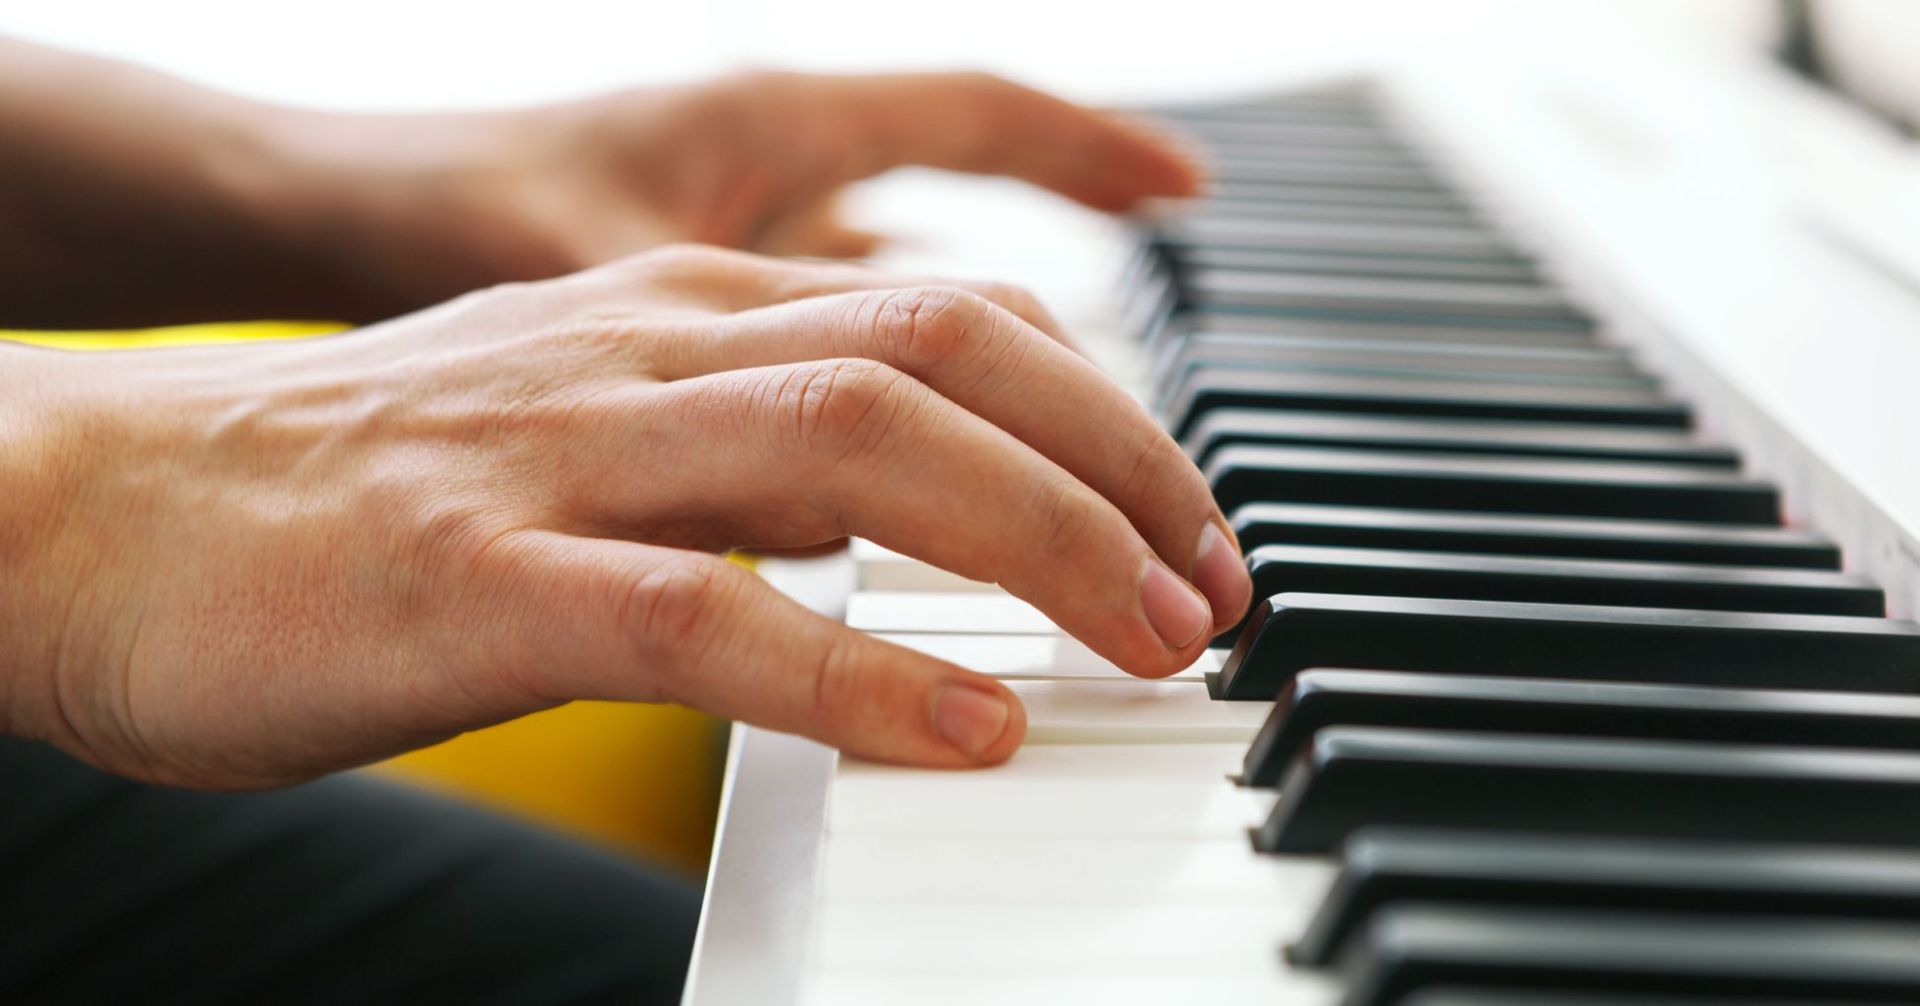 Χερια πιανίστα στα πλήκτρα πιάνου